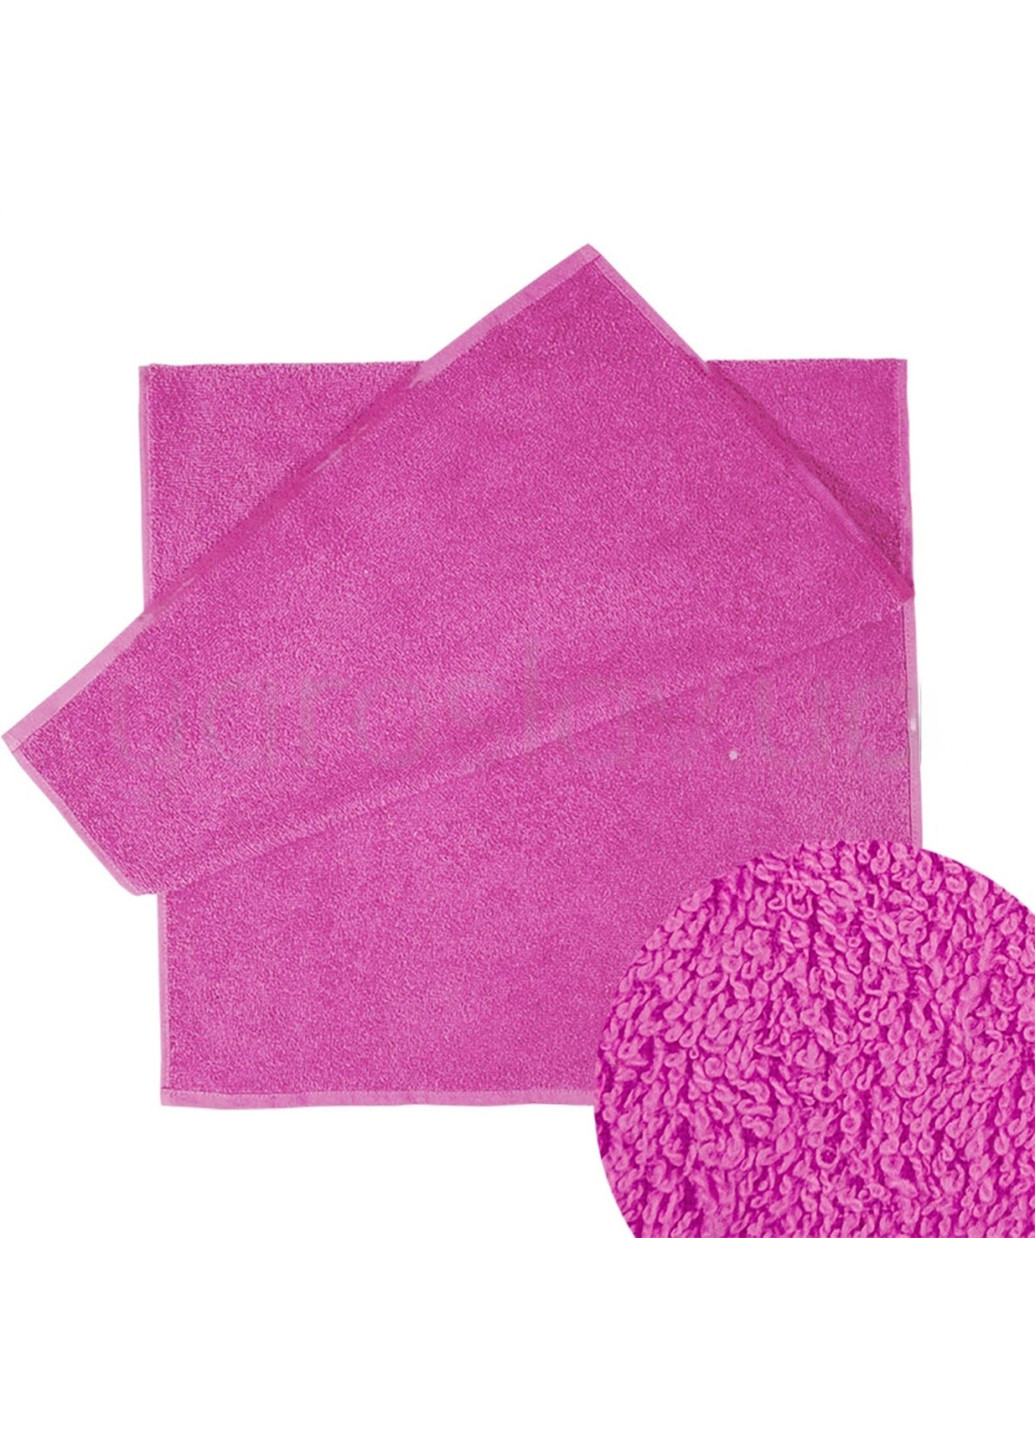 Ярослав полотенце яр-400 махровое 100х150 однотонный темно-розовый производство - Украина